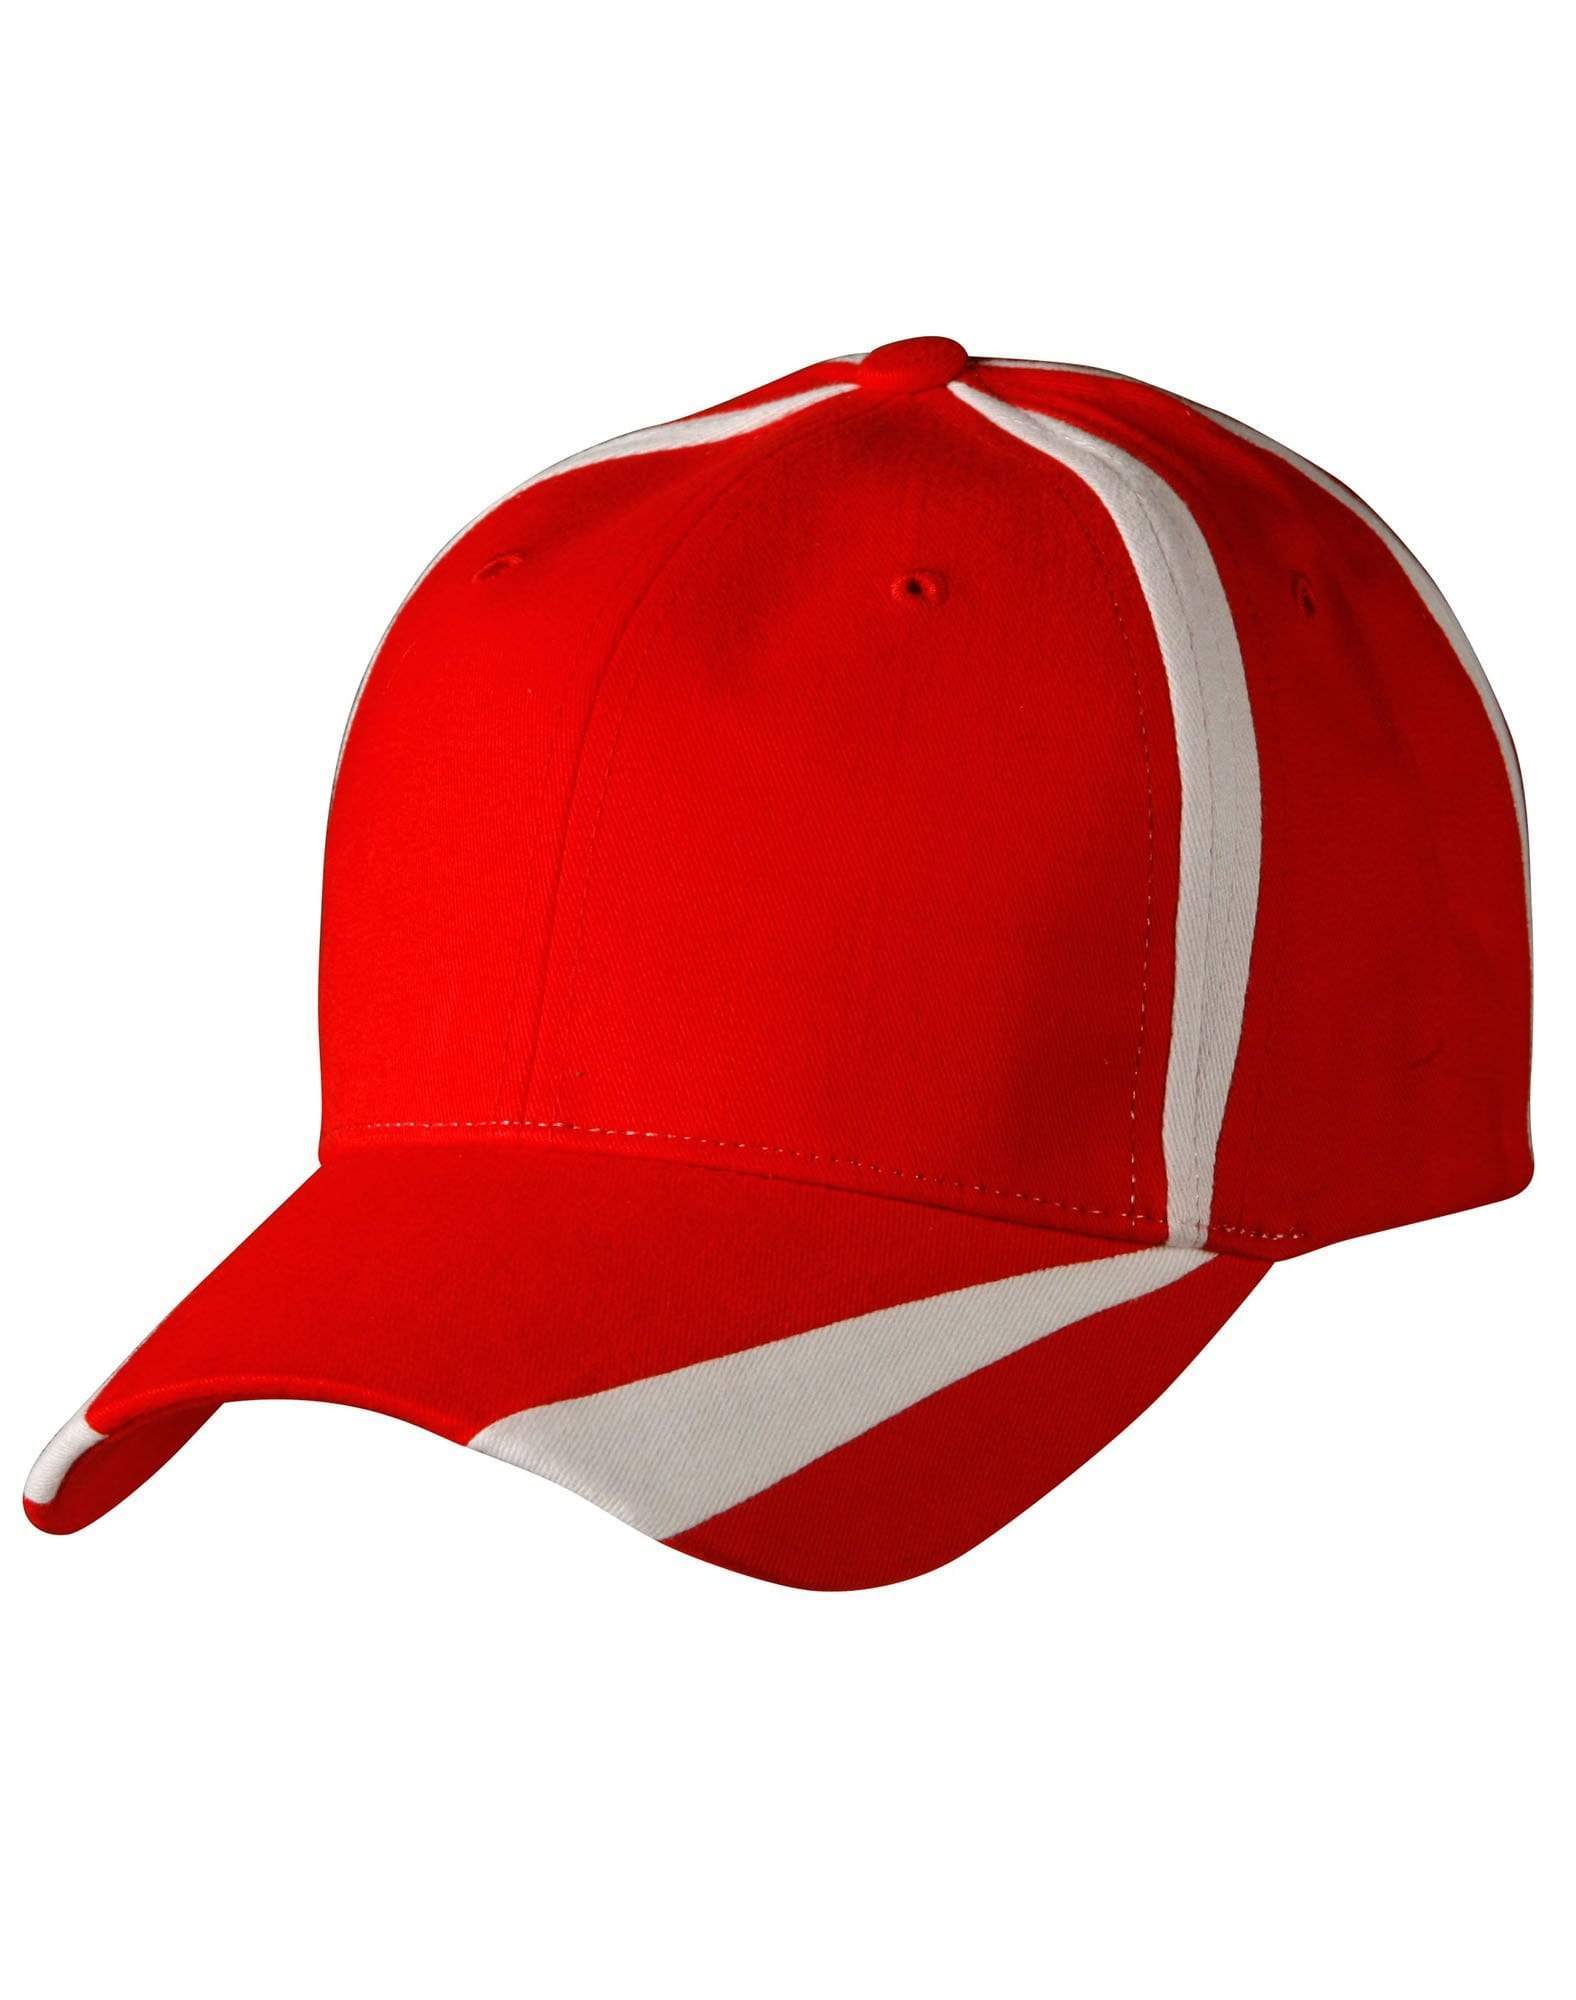 Peak & Crown Contrast Cap Ch81 Active Wear Winning Spirit Red/White One size 